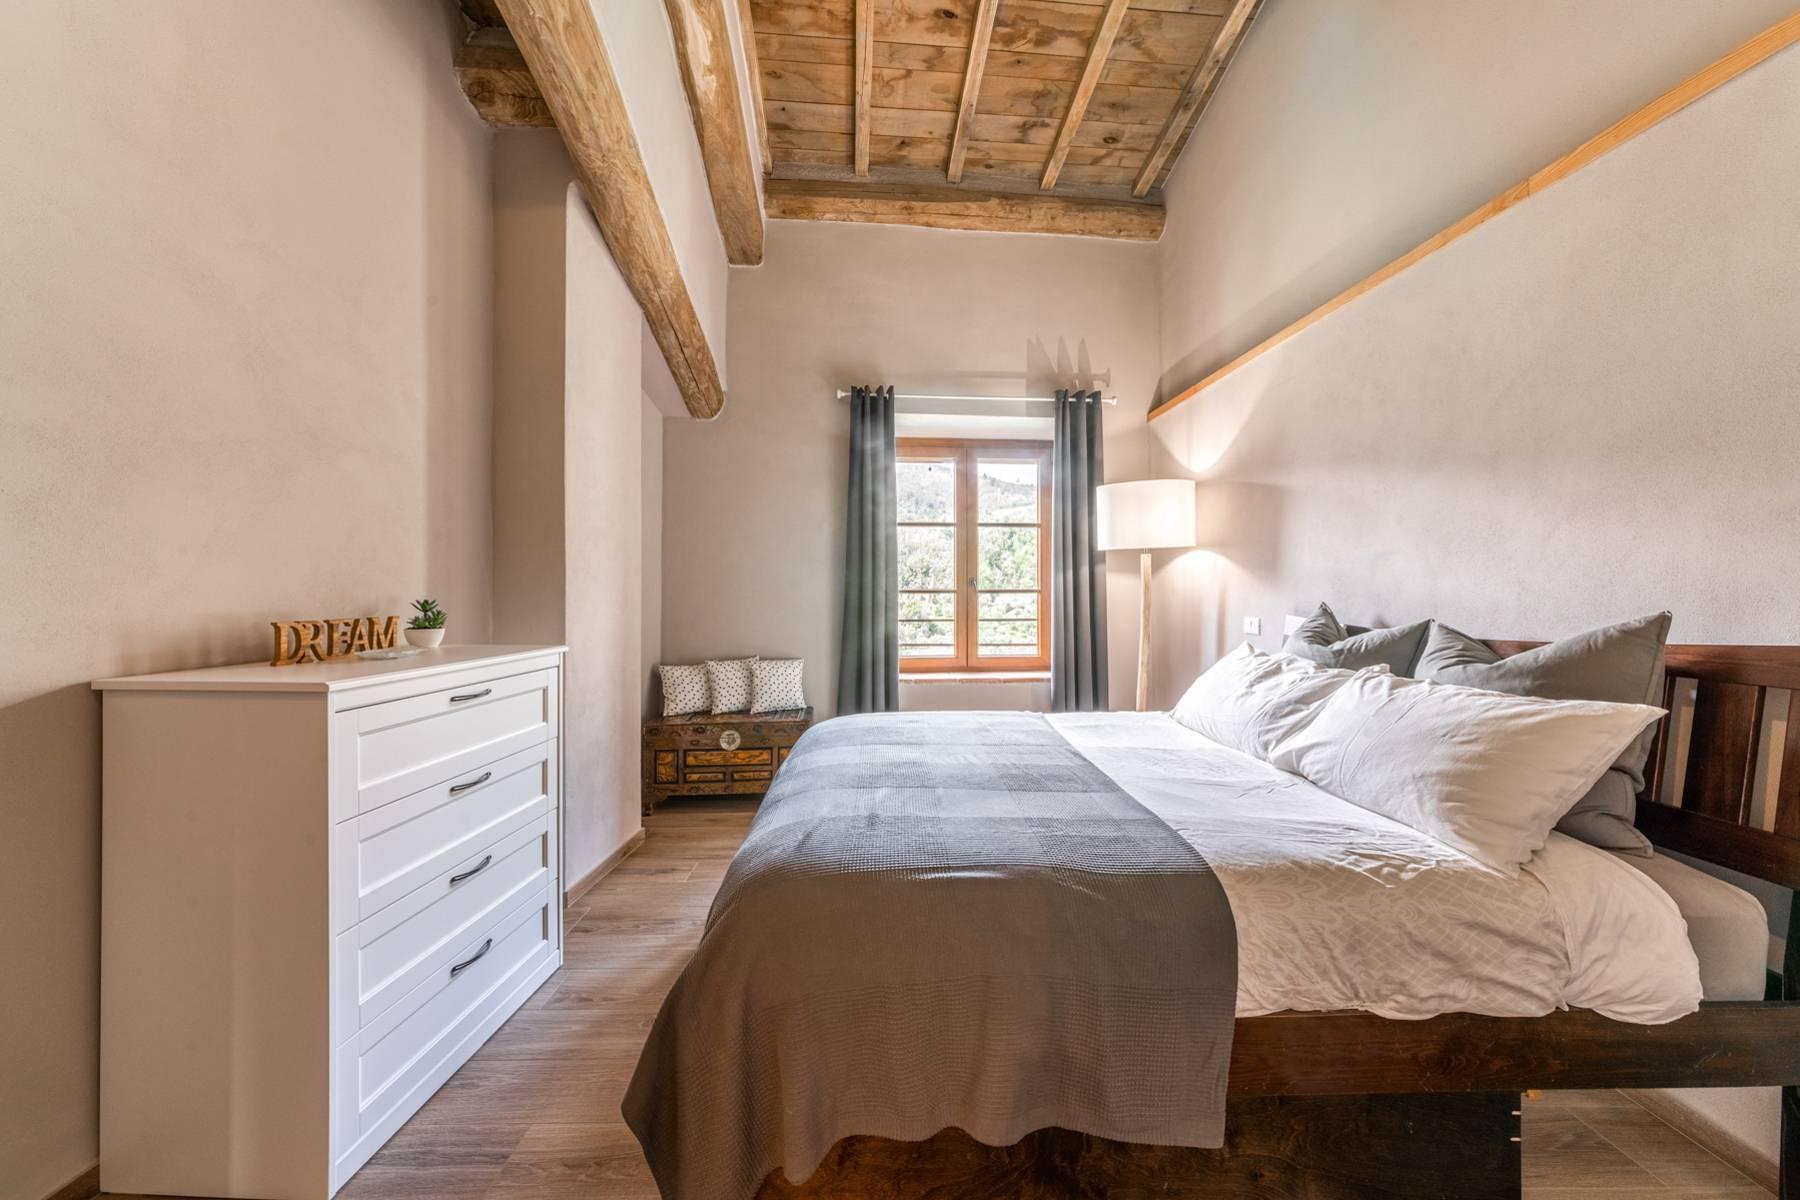 Maison jumelée restaurée avec amour sur les collines de Lucca - 19